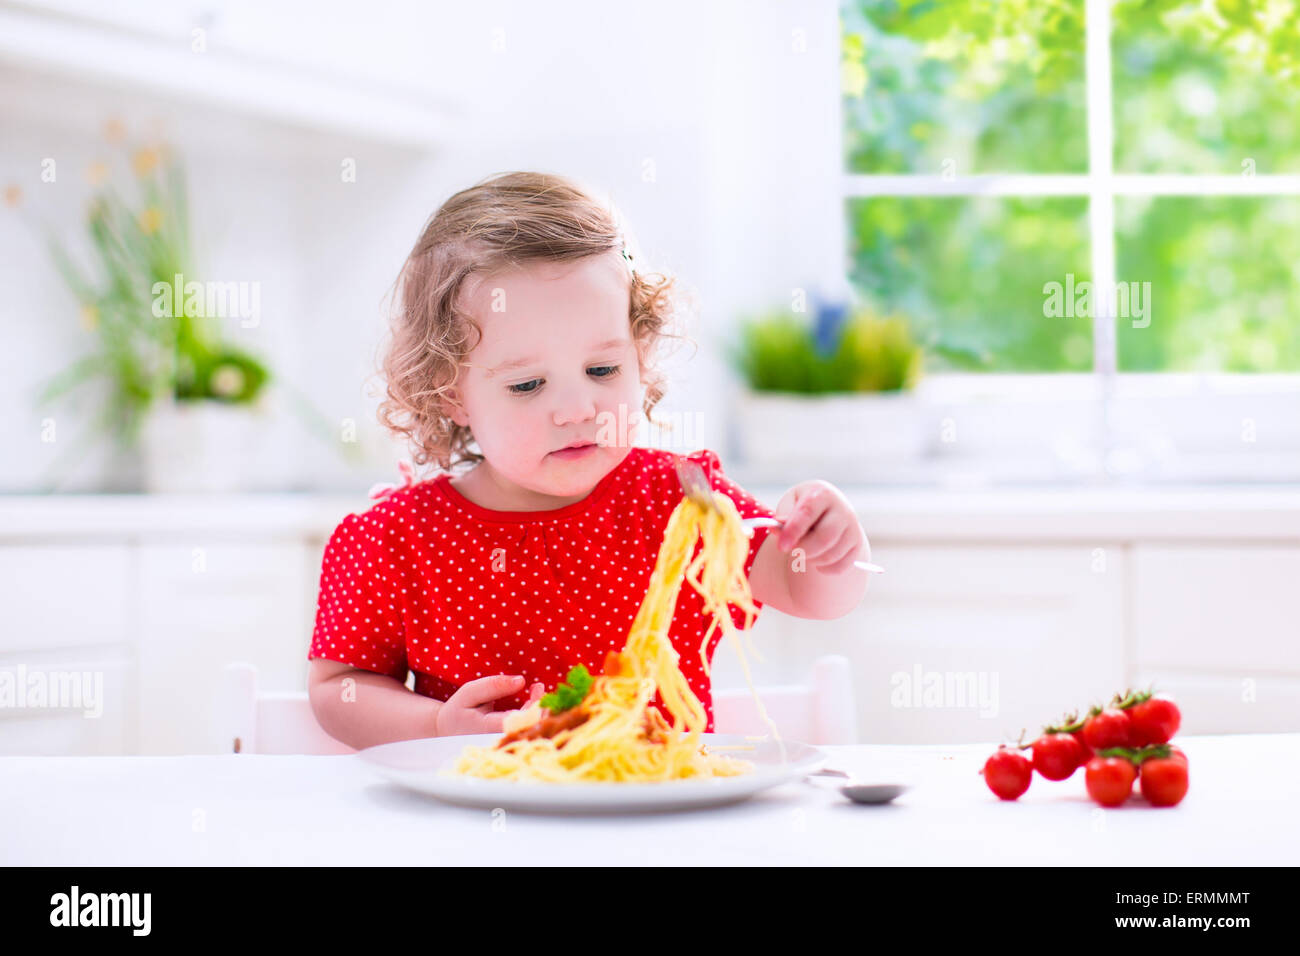 Les enfants mangent des pâtes. Dîner sain pour les enfants. Tout-petit enfant mange du spaghetti Bolognese dans une cuisine blanche à la maison. Enfant d'âge préscolaire Banque D'Images